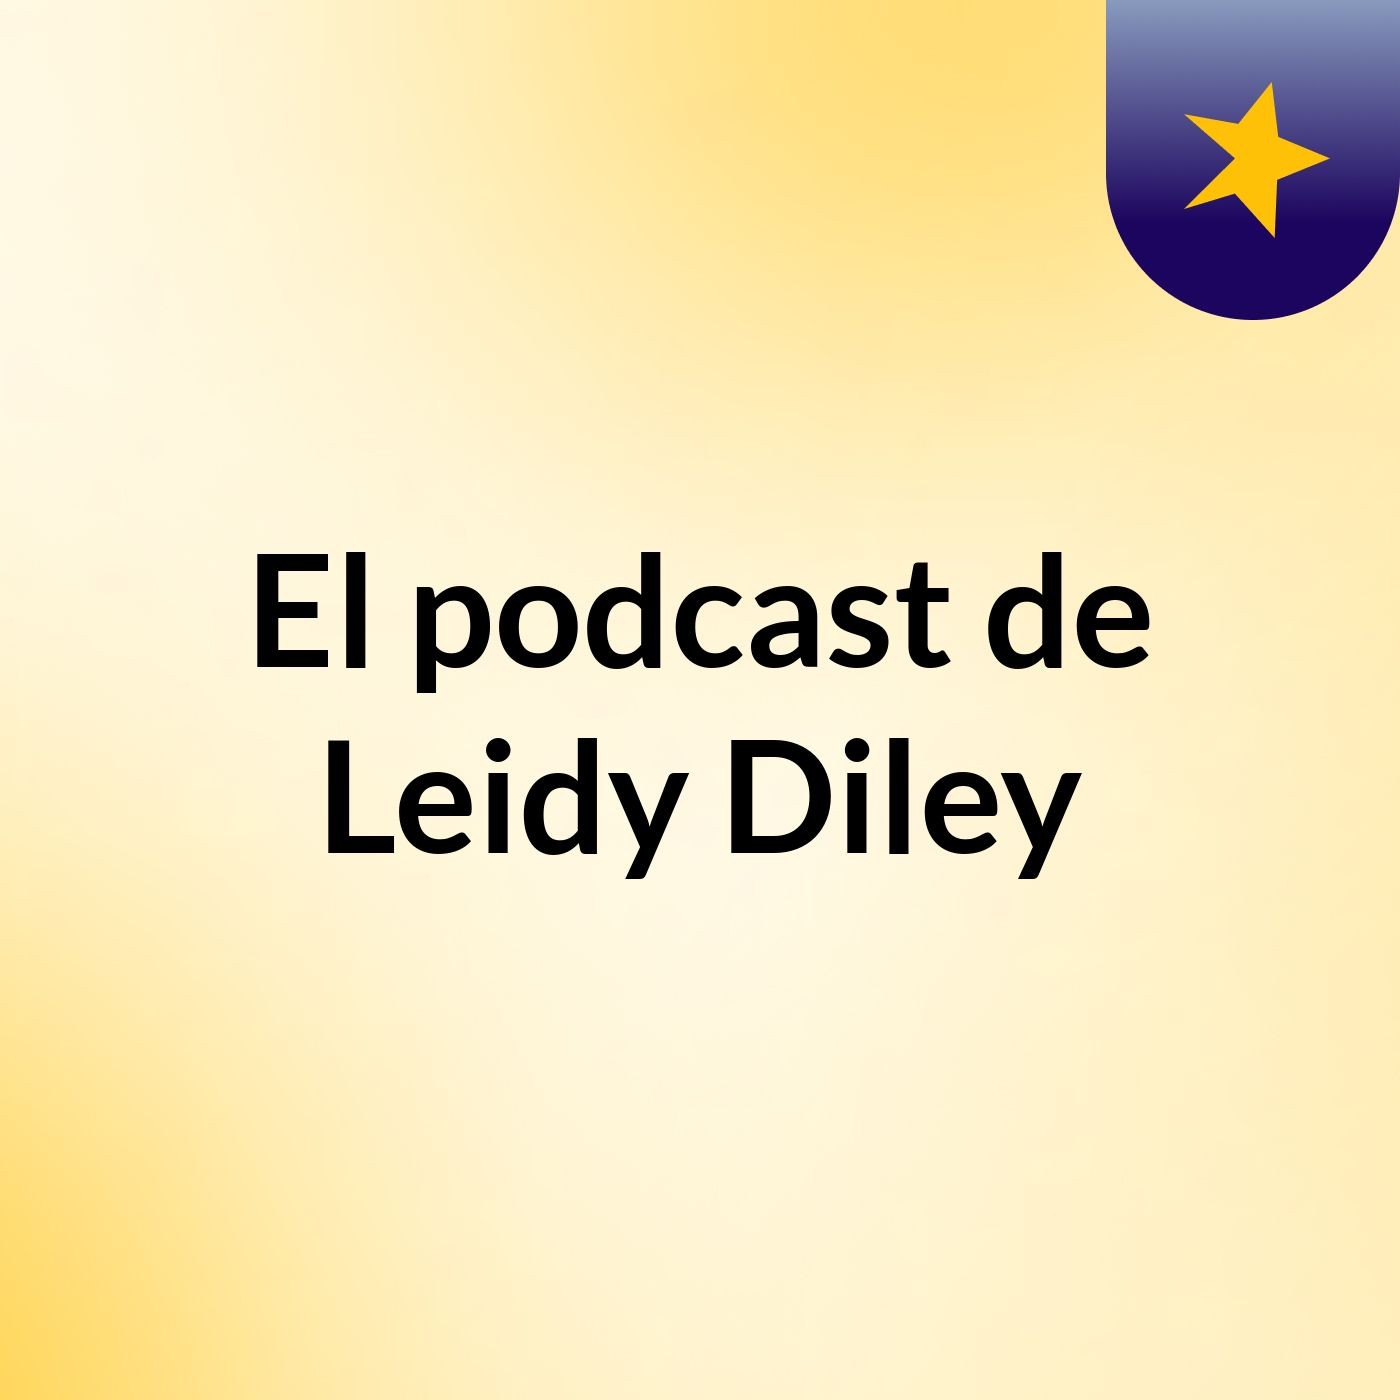 El podcast de Leidy Diley